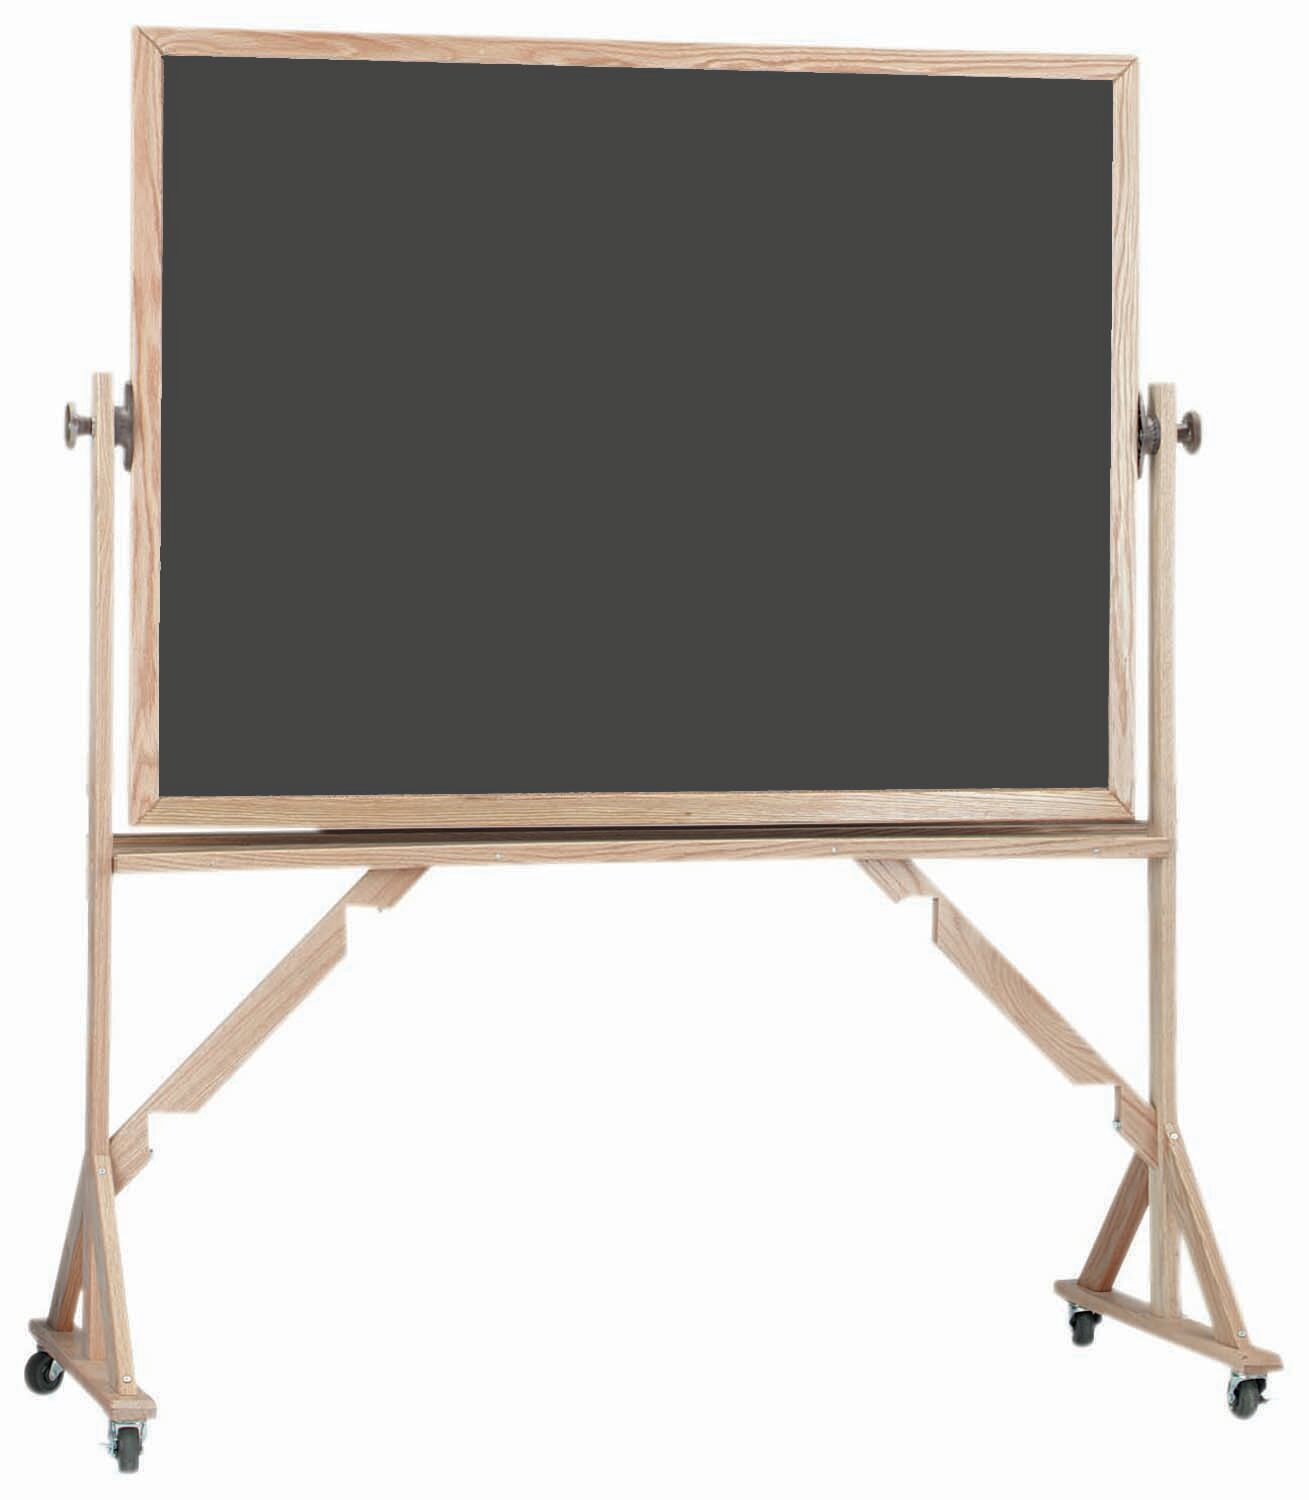 AARCO Reversible Free Standing Whiteboard, Wayfair